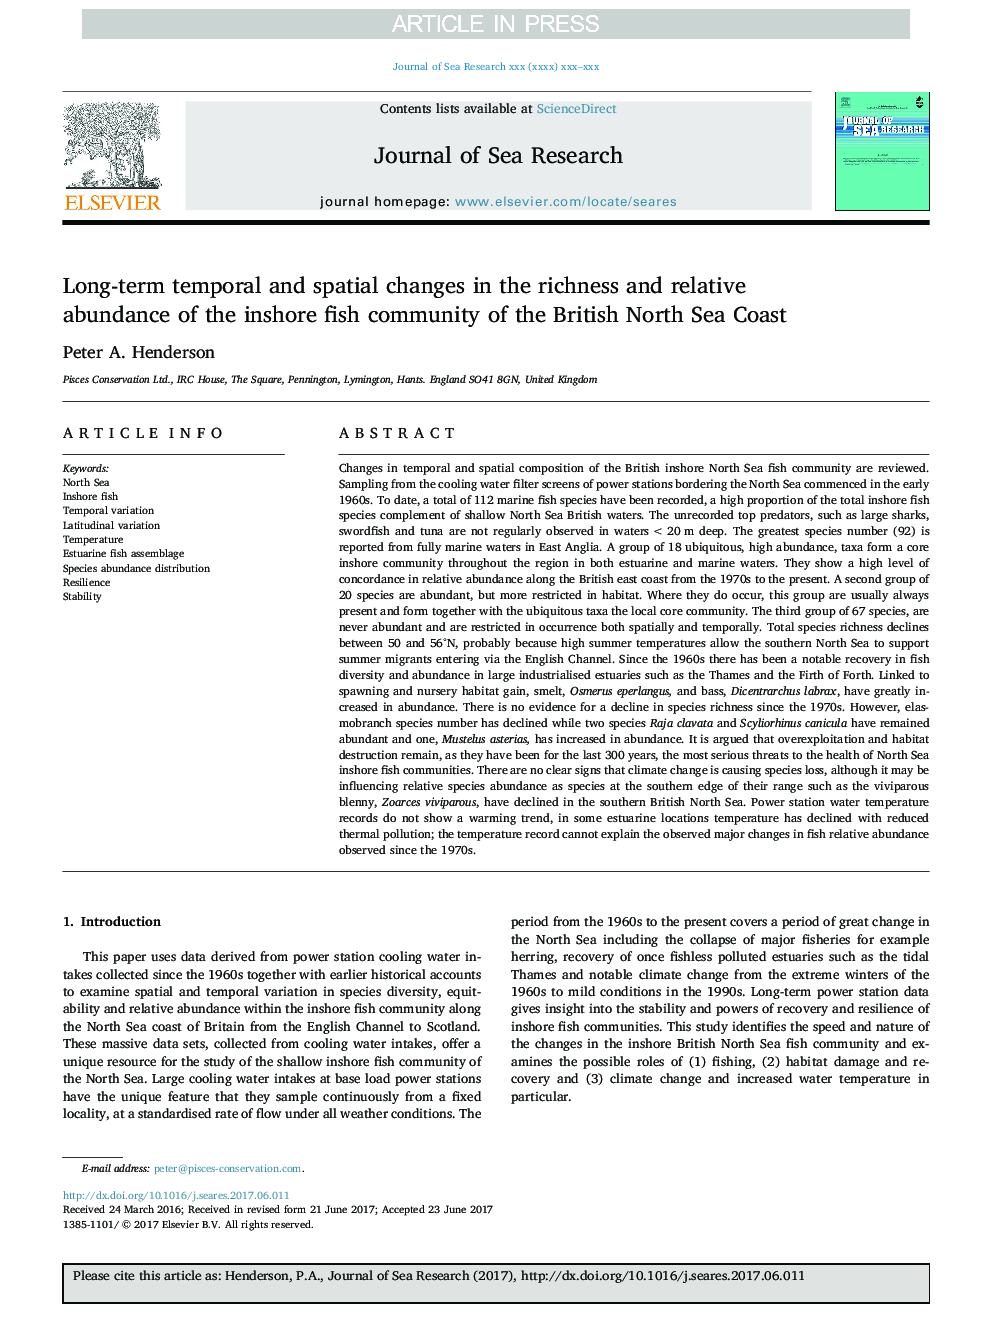 تغییرات زمانی و مکانی طولانی مدت در غنای و فراوانی نسبی جامعه ماهی ساحلی ساحل دریای شمال بریتانیا 